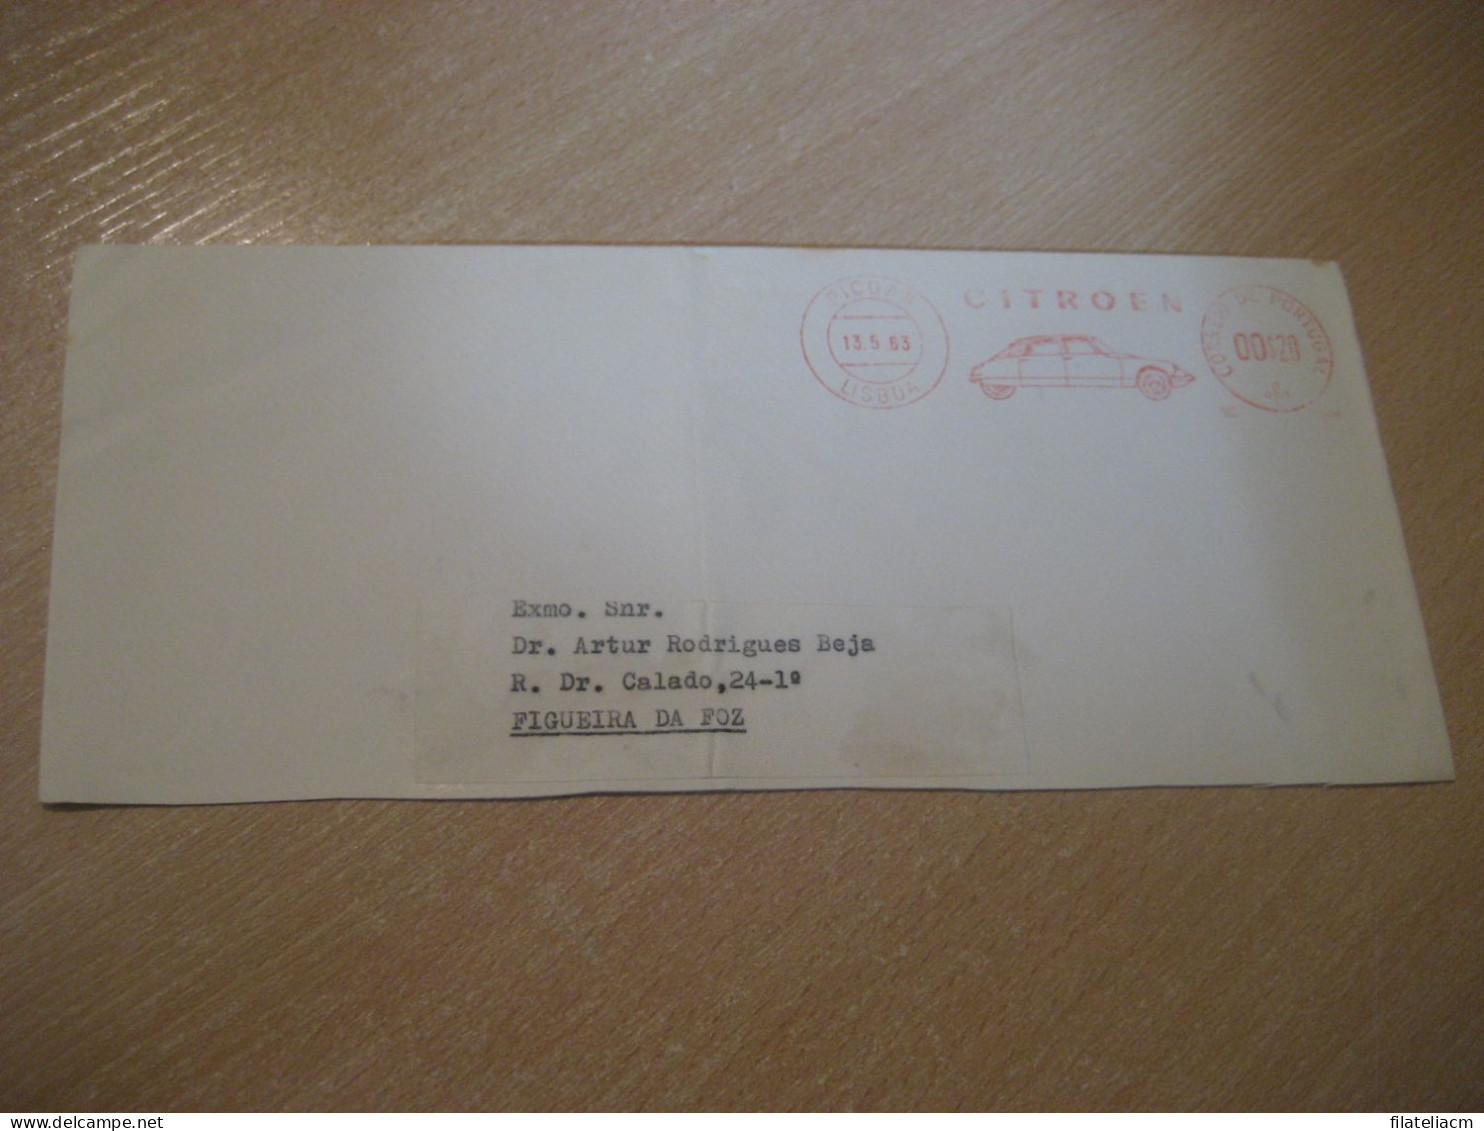 LISBOA 1963 To Figueira Da Foz CITROEN Auto Car Meter Mail Cancel Cut Cuted Cover PORTUGAL - Briefe U. Dokumente